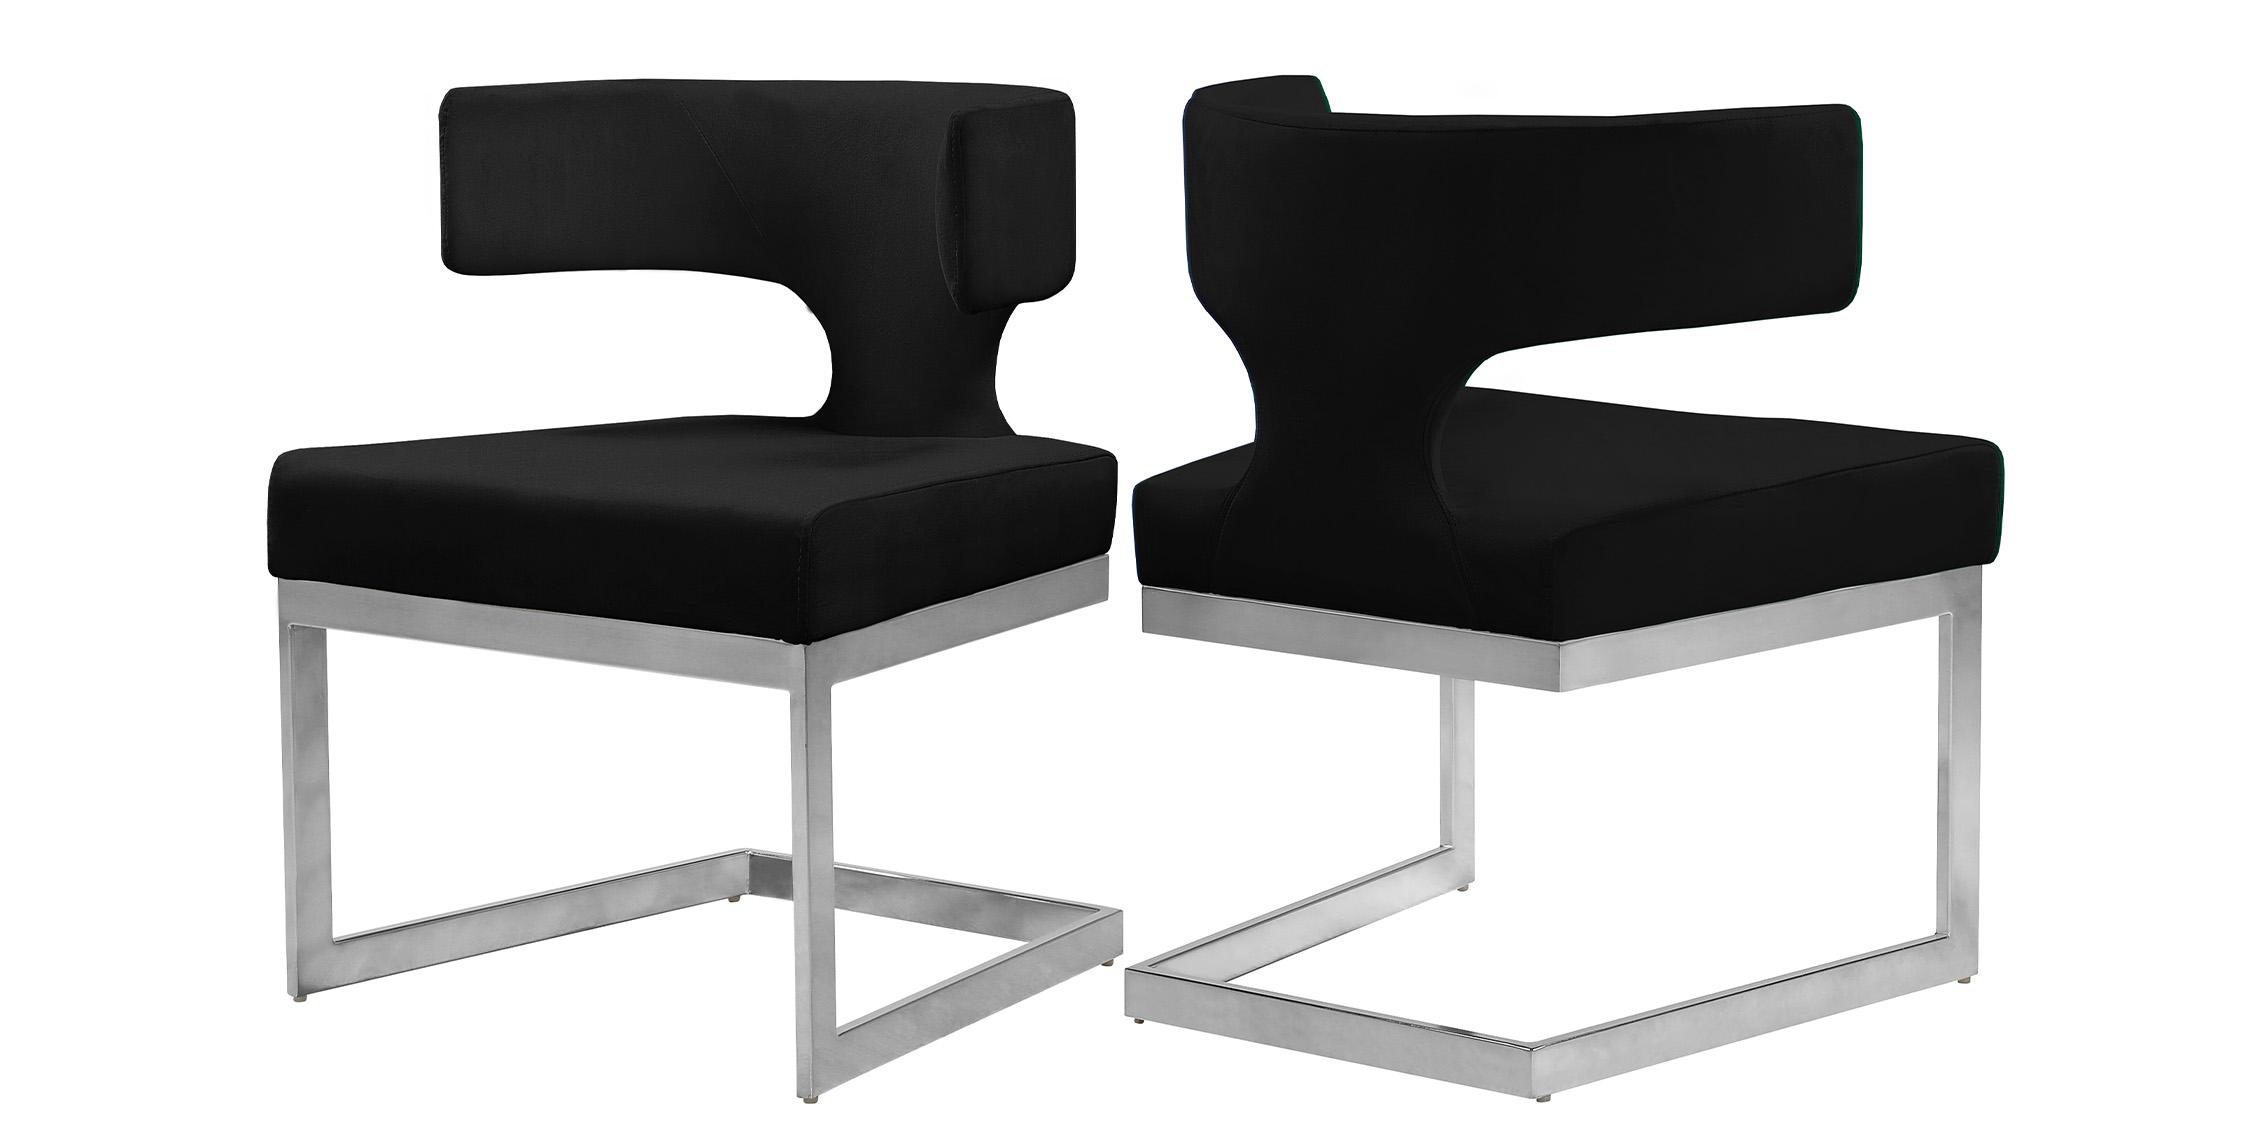 Contemporary Dining Chair Set ALEXANDRA 954Black-C 954Black-C-Set-2 in Chrome, Black Velvet